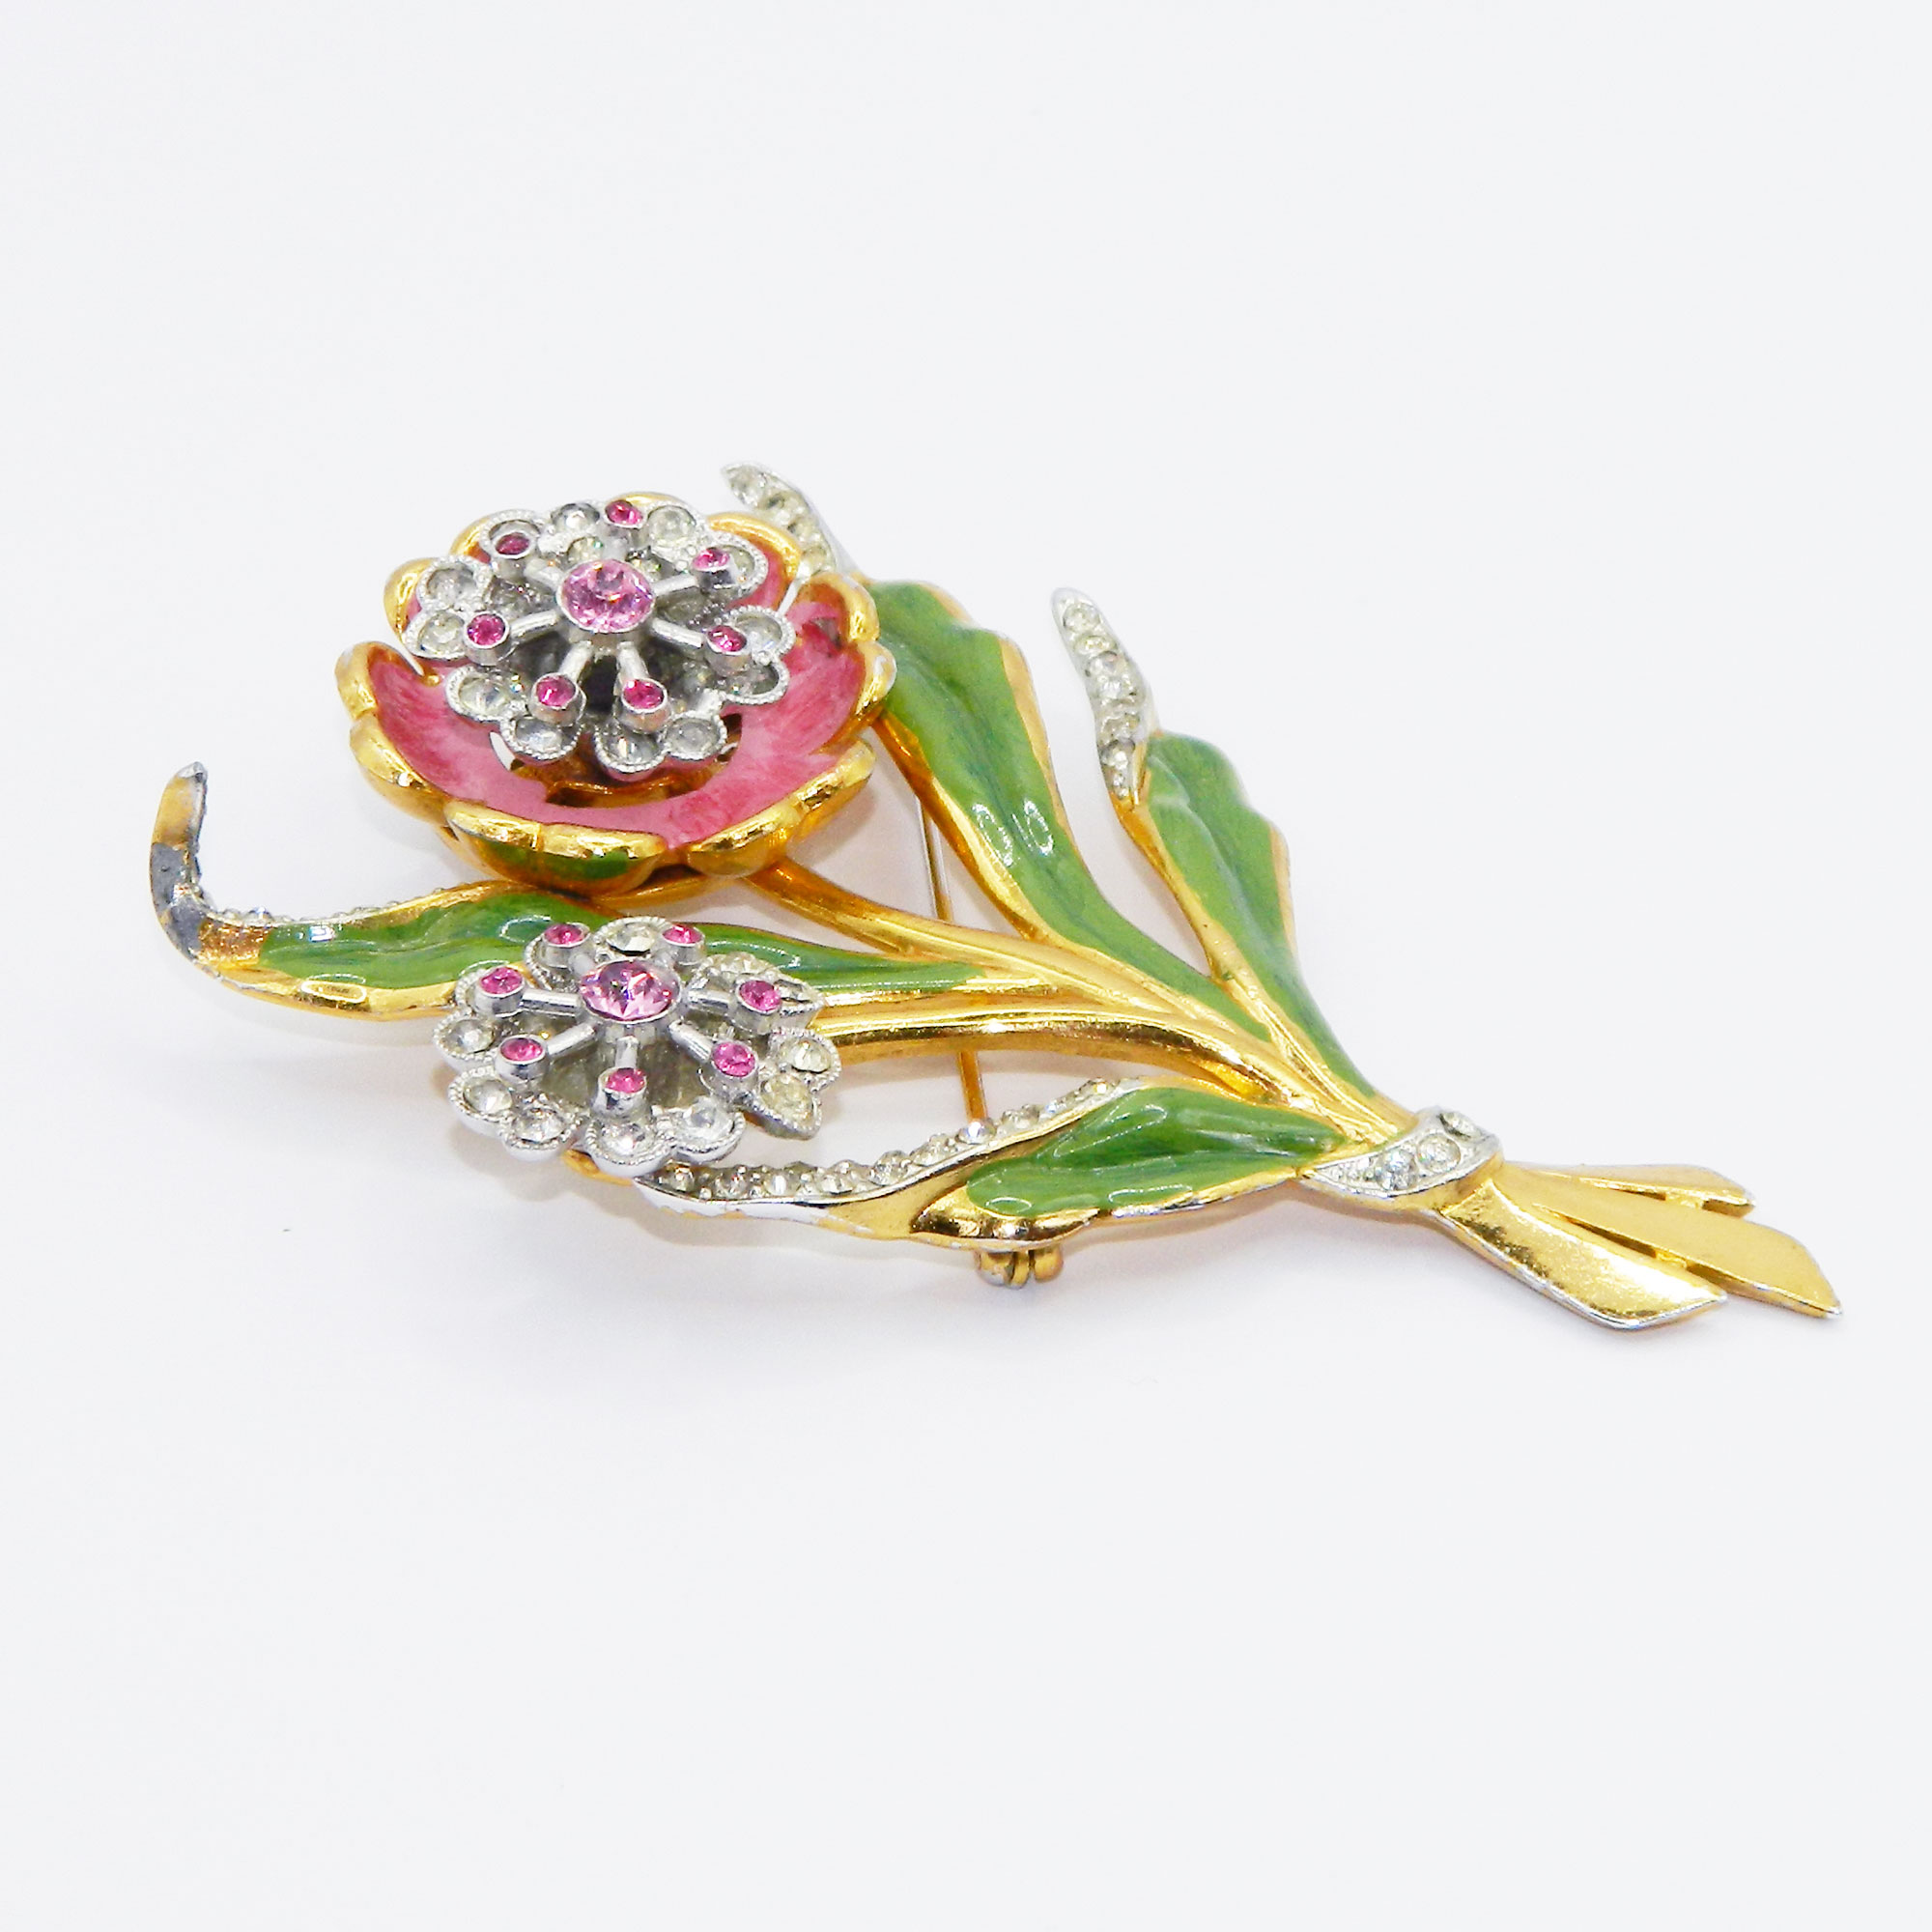 1940s Coro flower brooch